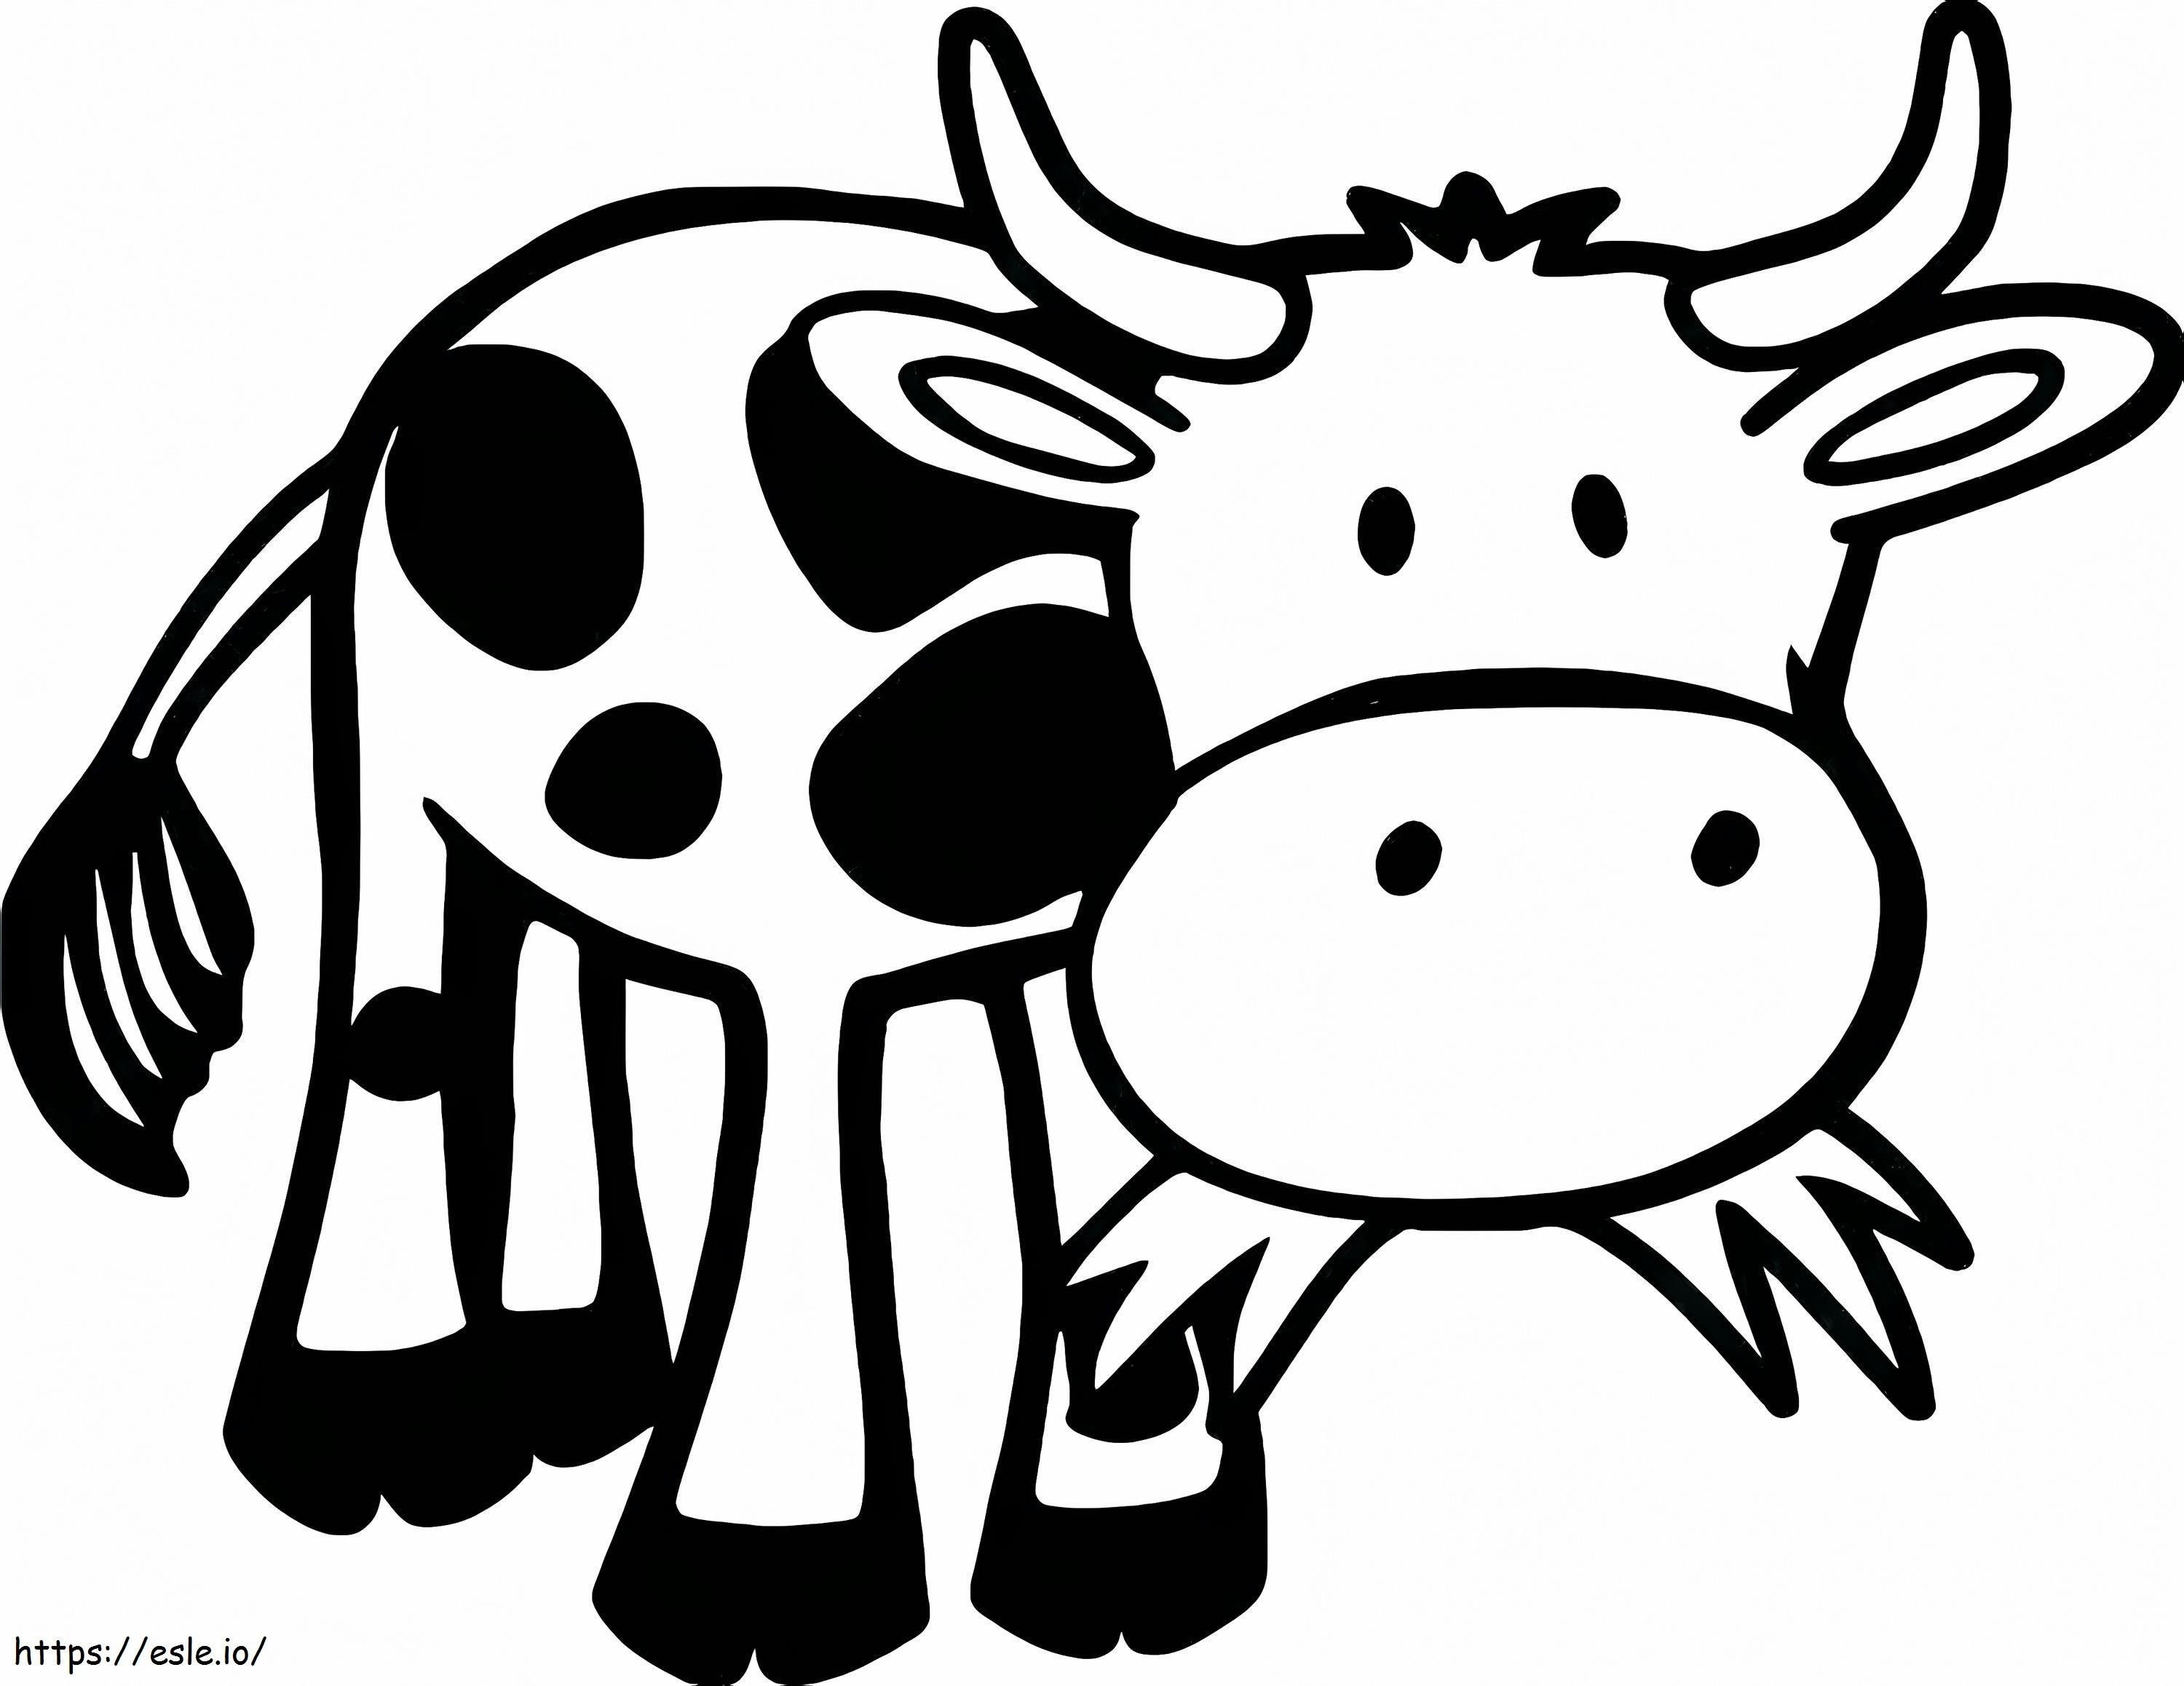  De Vacas Vacas Página De Vaca Para Imprimir Gratis Estilo De Arte Para Adultos Ilustración De San Valentín De Vacas De Dibujos Animados para colorear